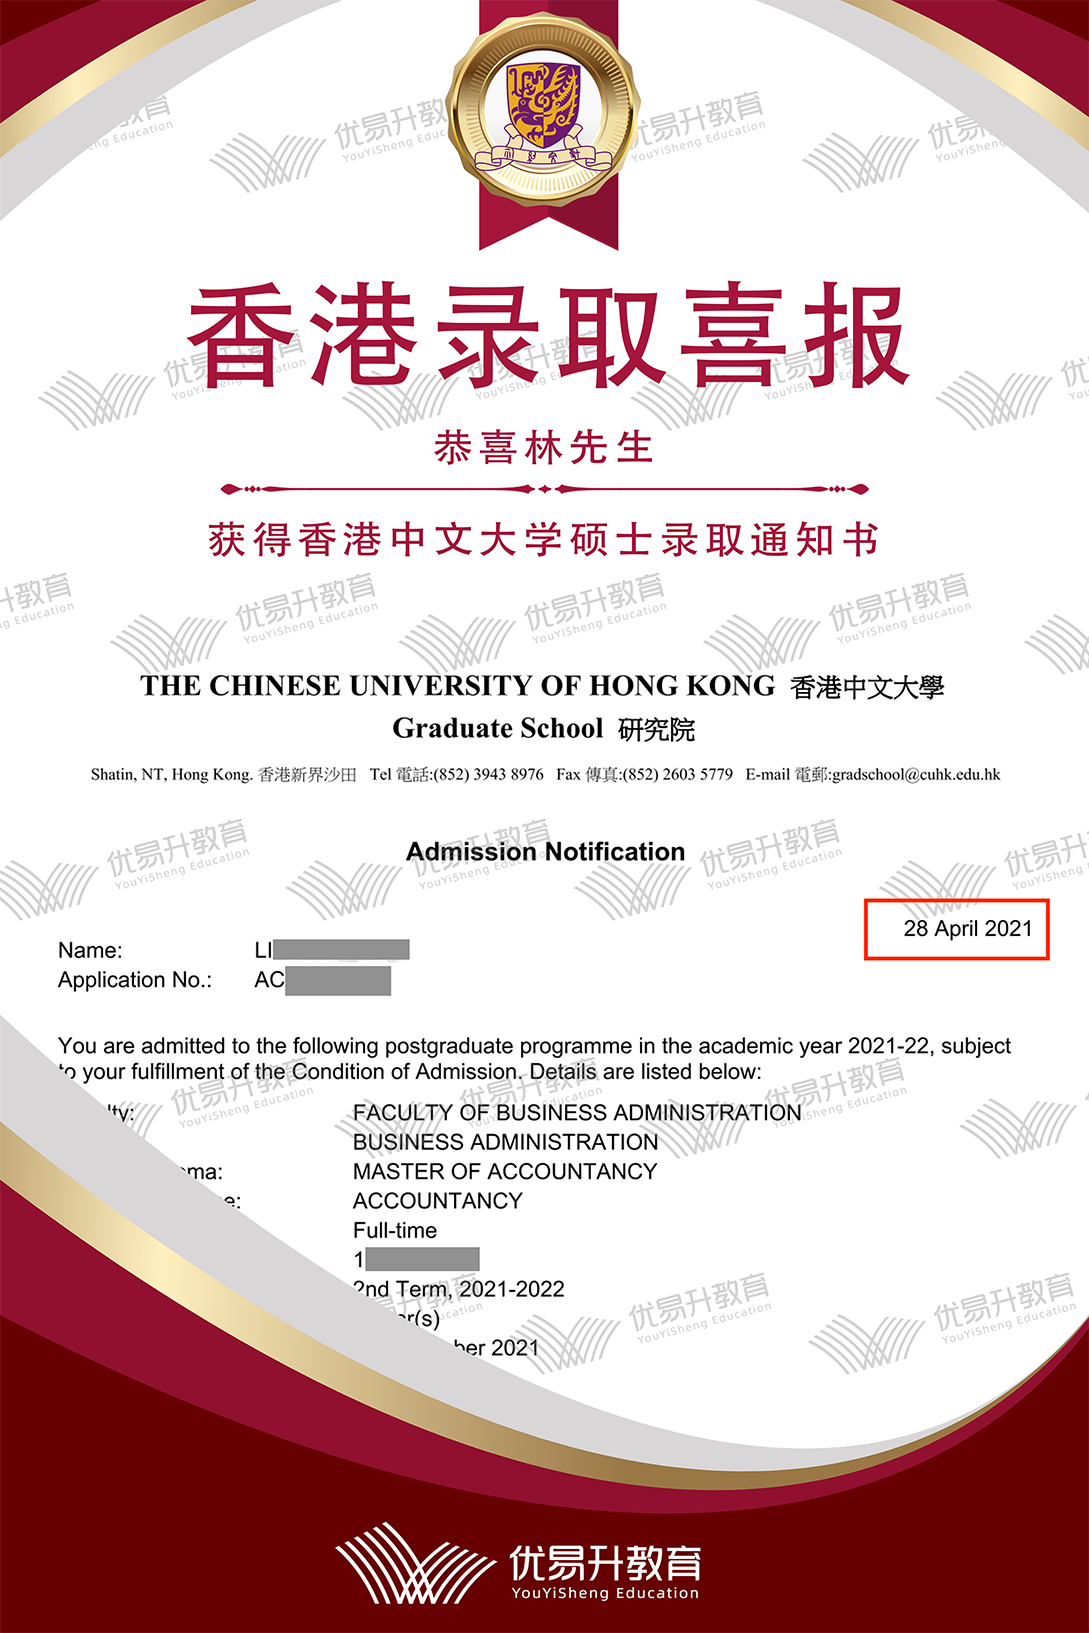 恭喜L同学获得香港中文大学硕士录取通知书.png